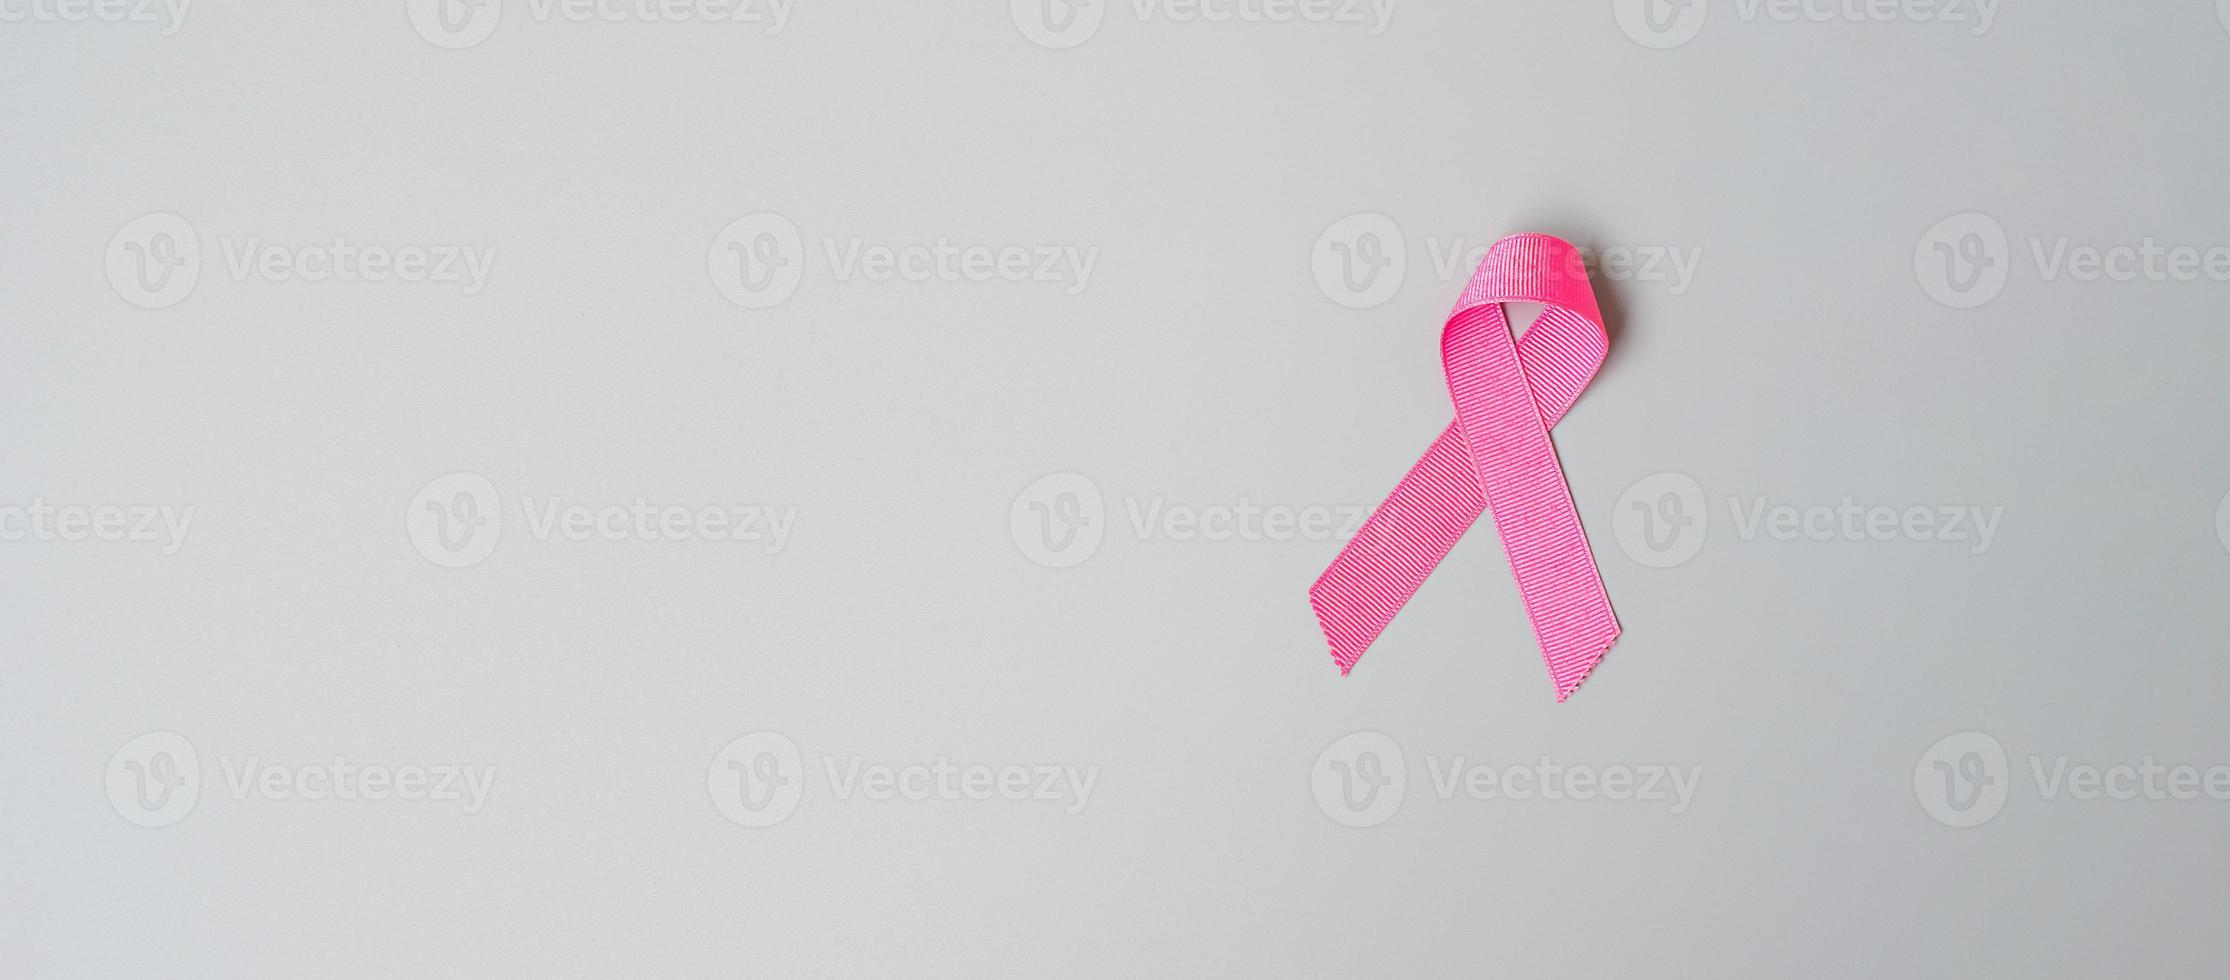 oktober borstkanker bewustzijn maand, roze lint op grijze achtergrond voor het ondersteunen van mensen die leven en ziekte. internationaal vrouwen-, moeder- en wereldkankerdagconcept foto